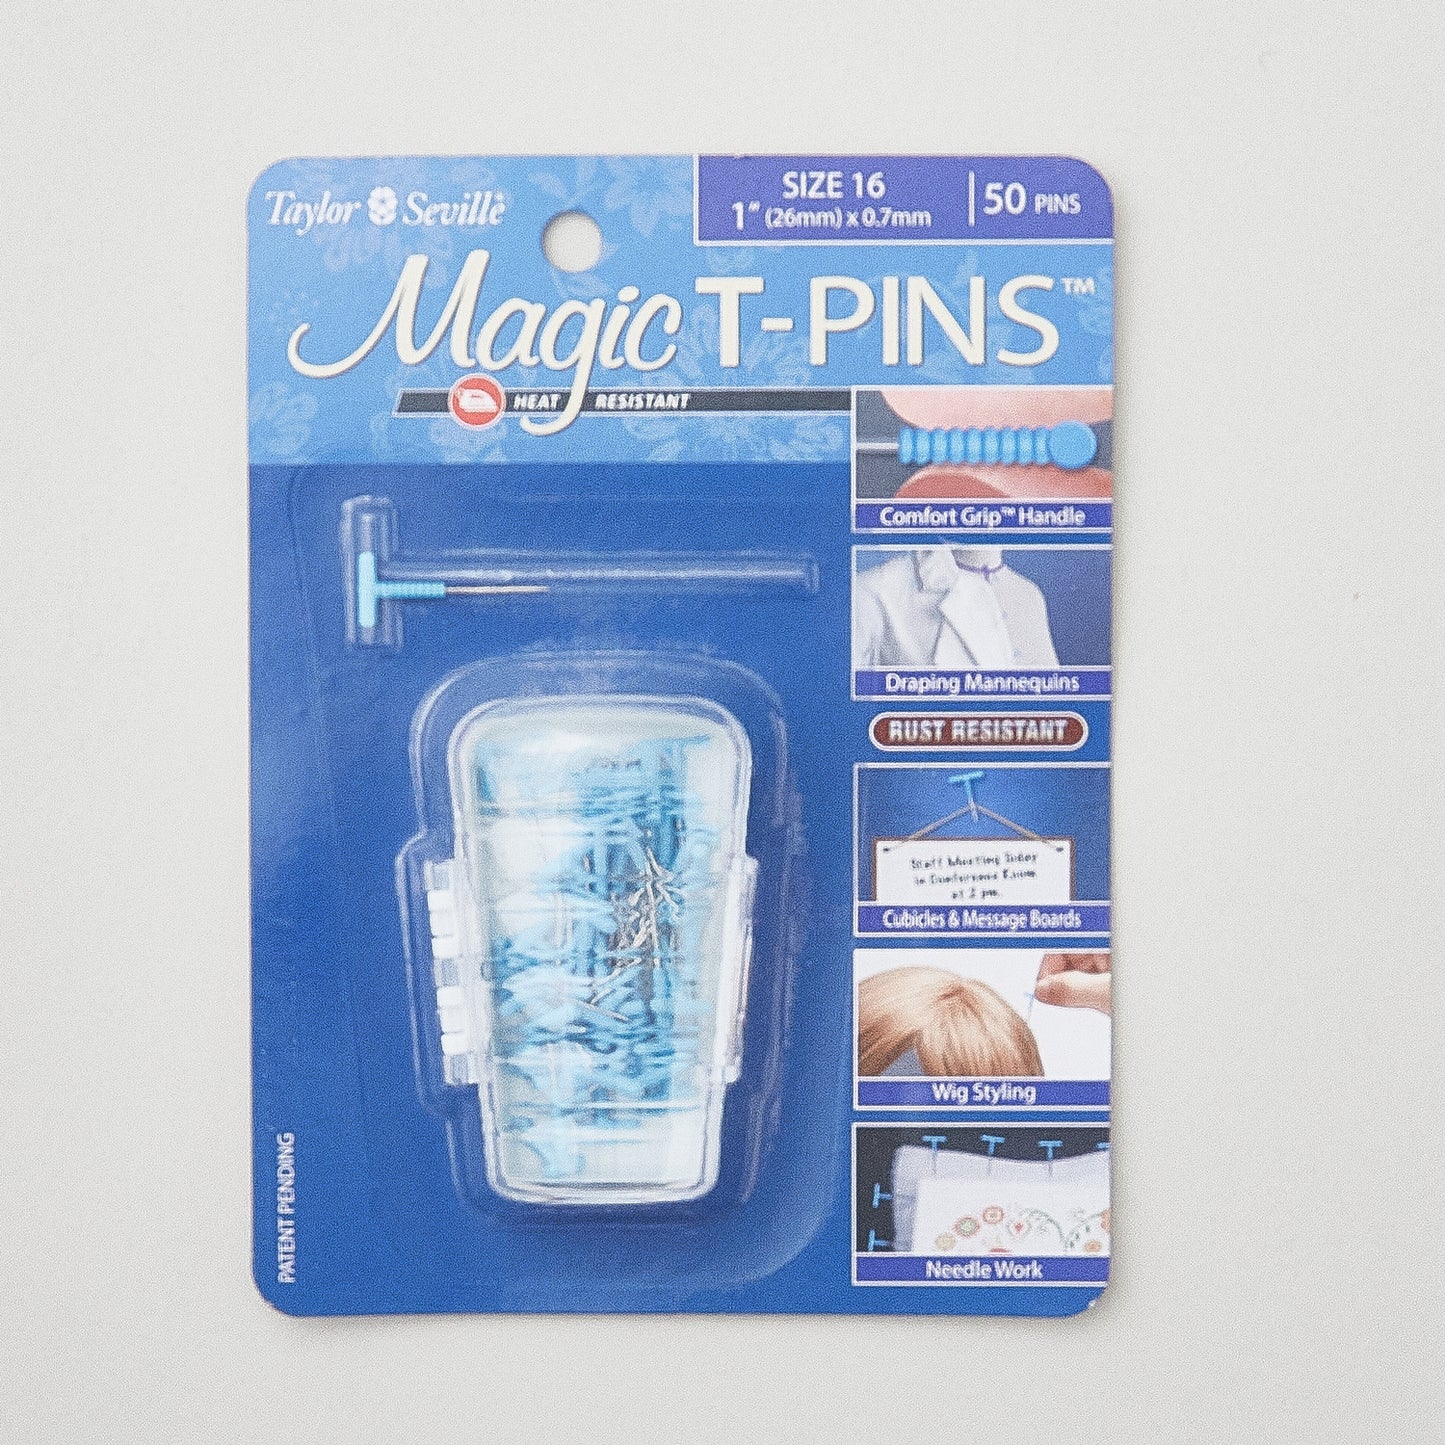 Magic T-Pins™ Size 16 (1" x 0.7mm) Alternative View #2